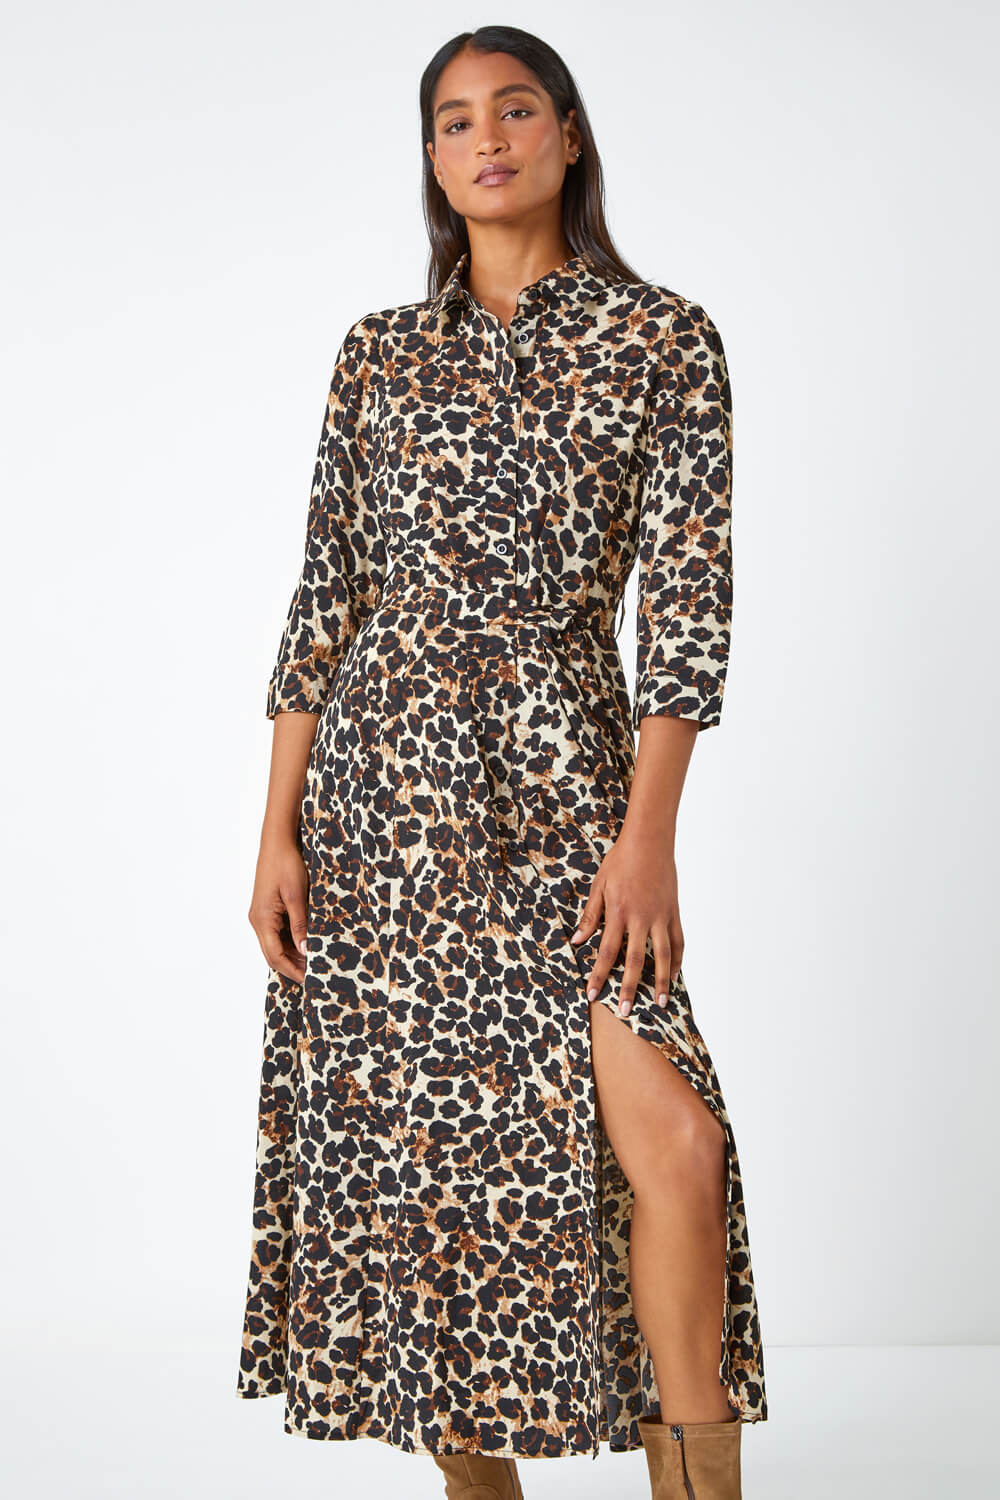 Beige Leopard Print Belted Shirt Dress, Image 4 of 5